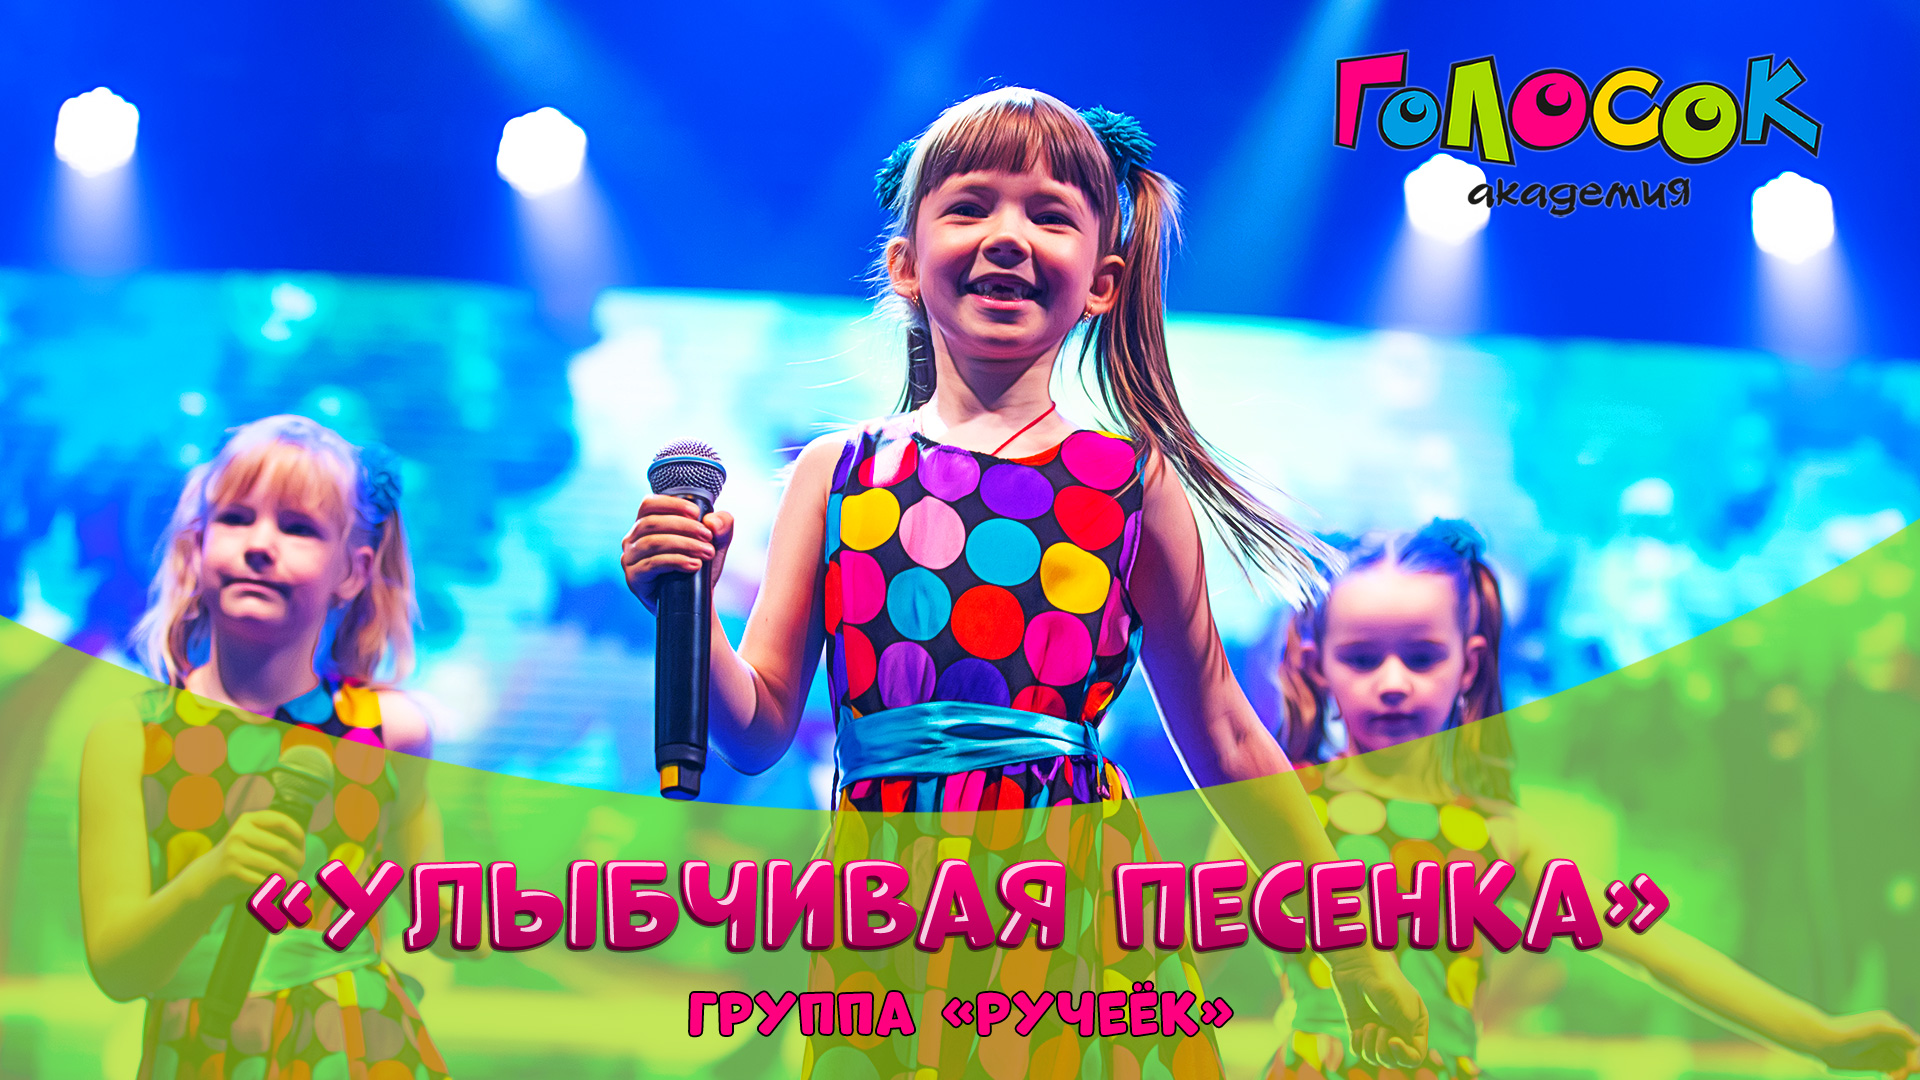 Детская песня - Улыбчивая песенка | Академия Голосок | группа Ручеёк (5+ лет)